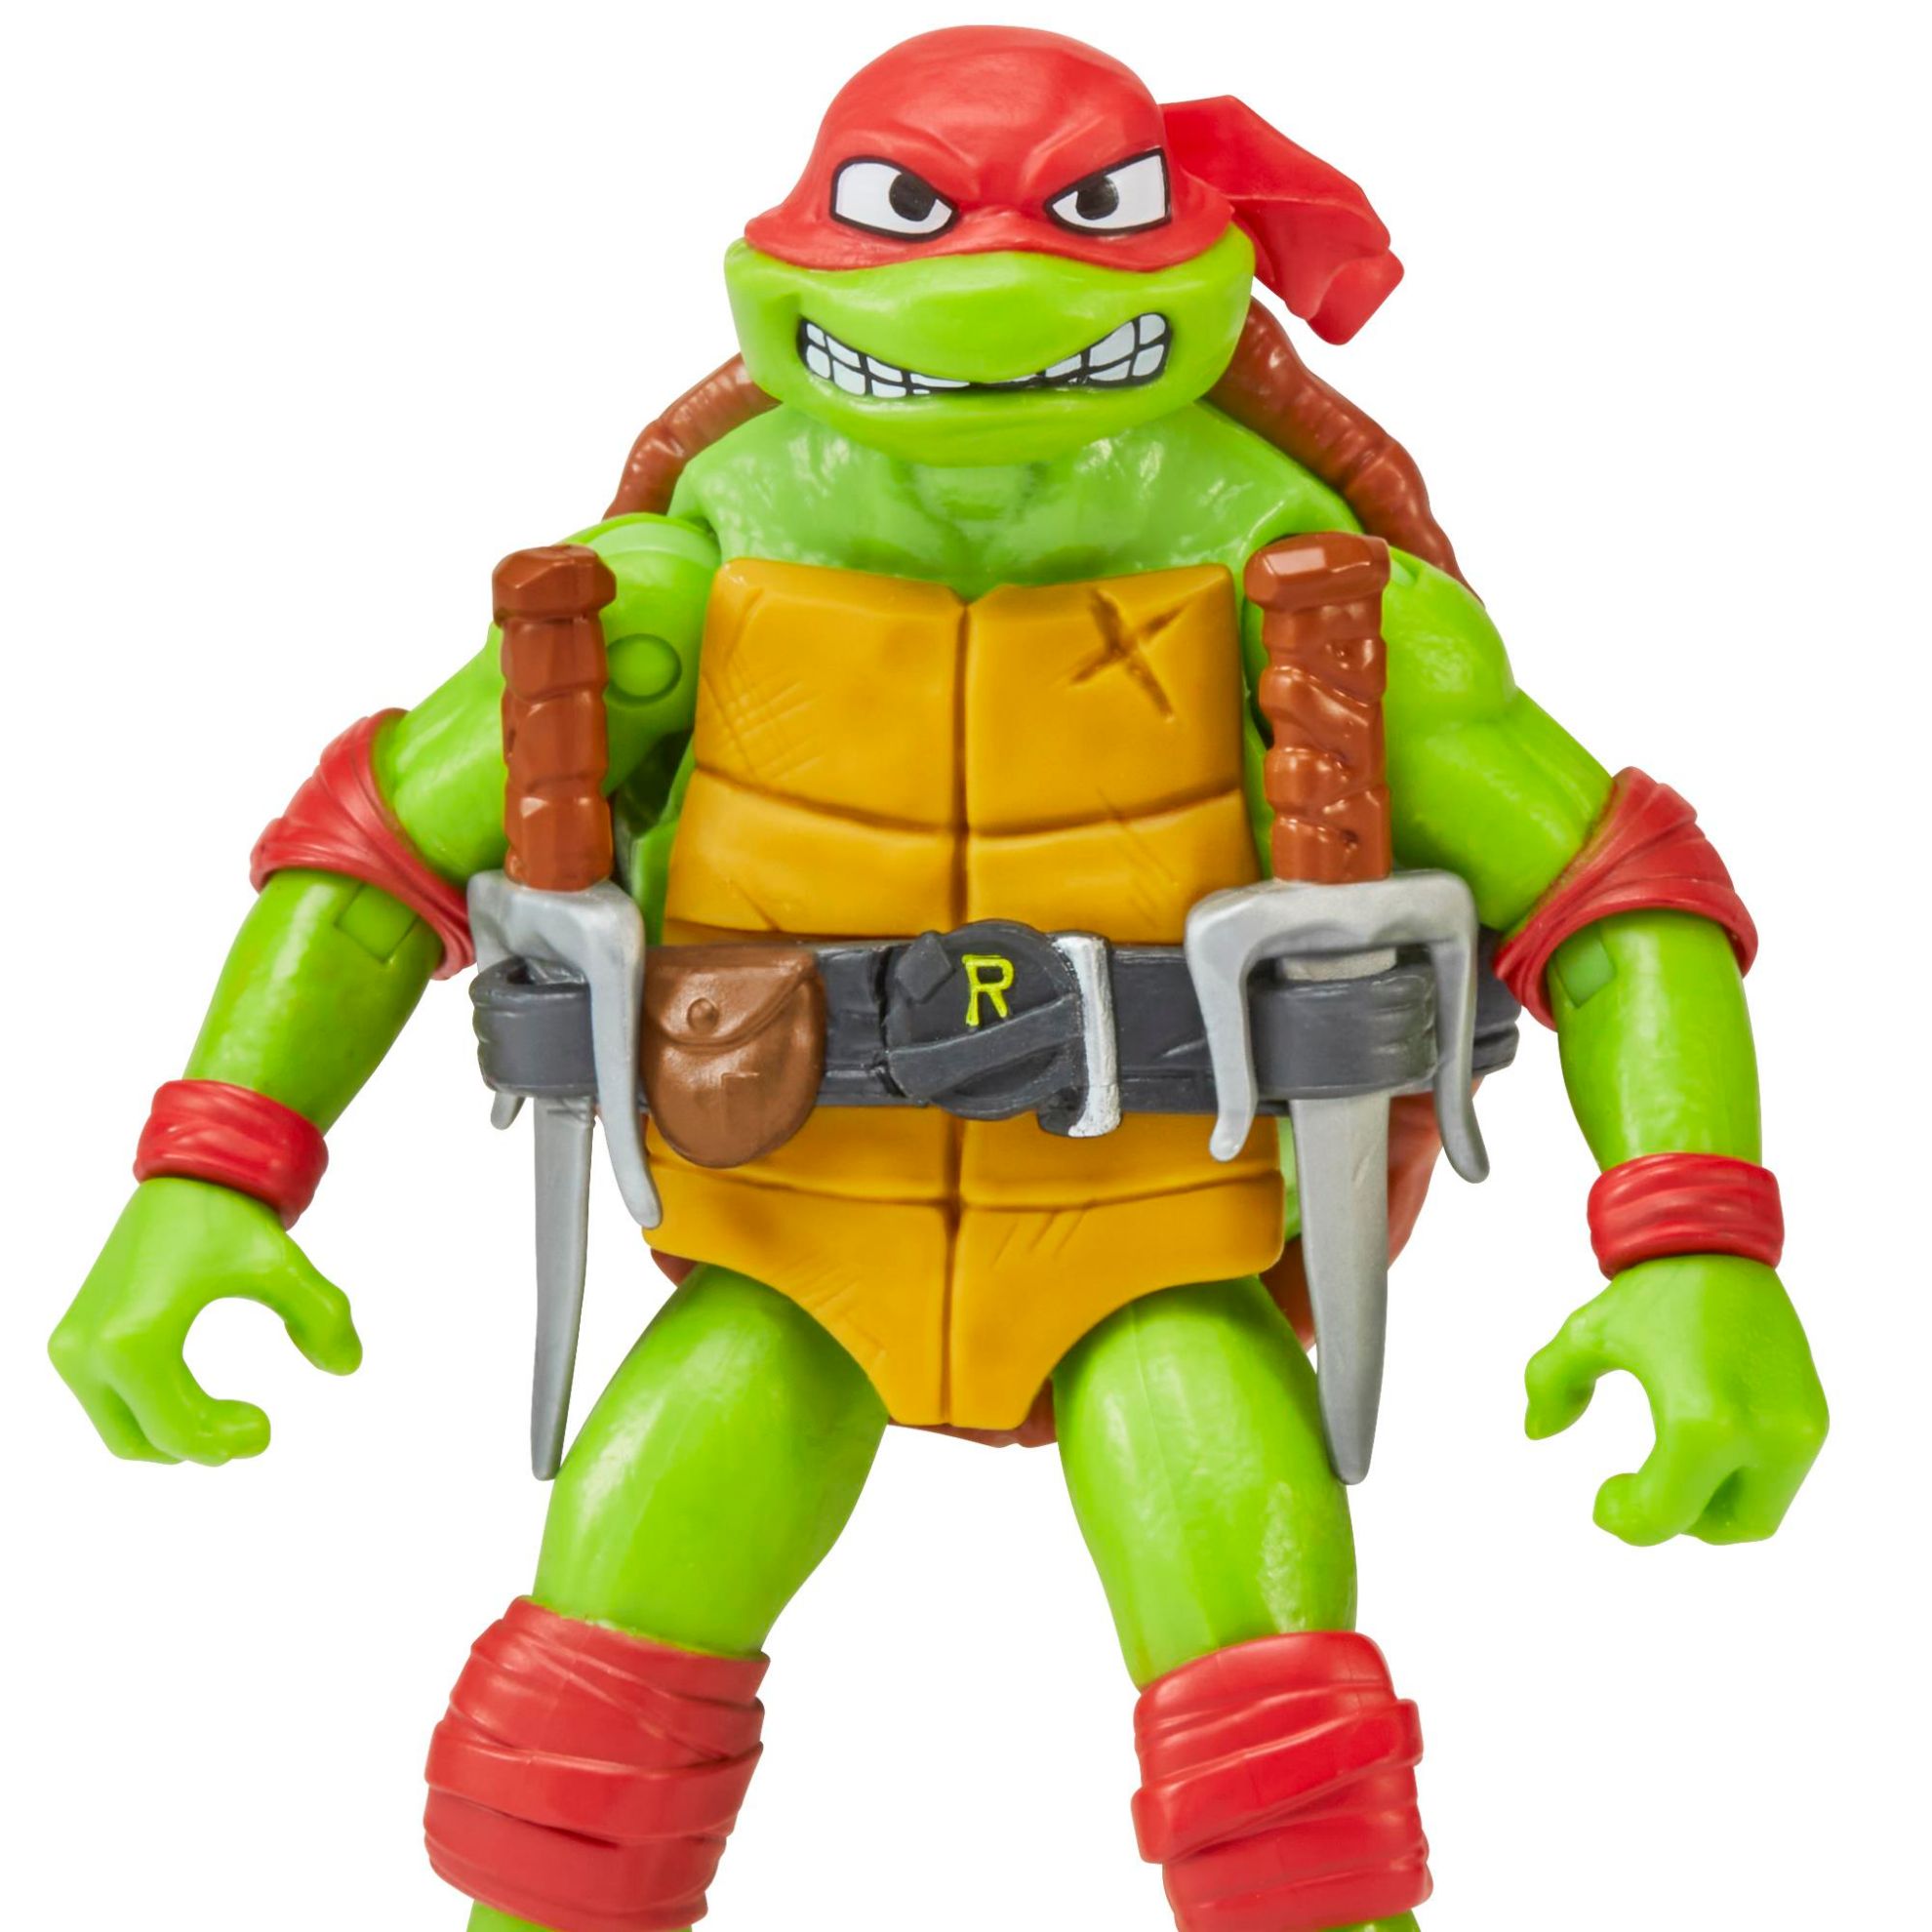 Teenage Mutant Ninja Turtles Movie Basic Figure - Raphael 6